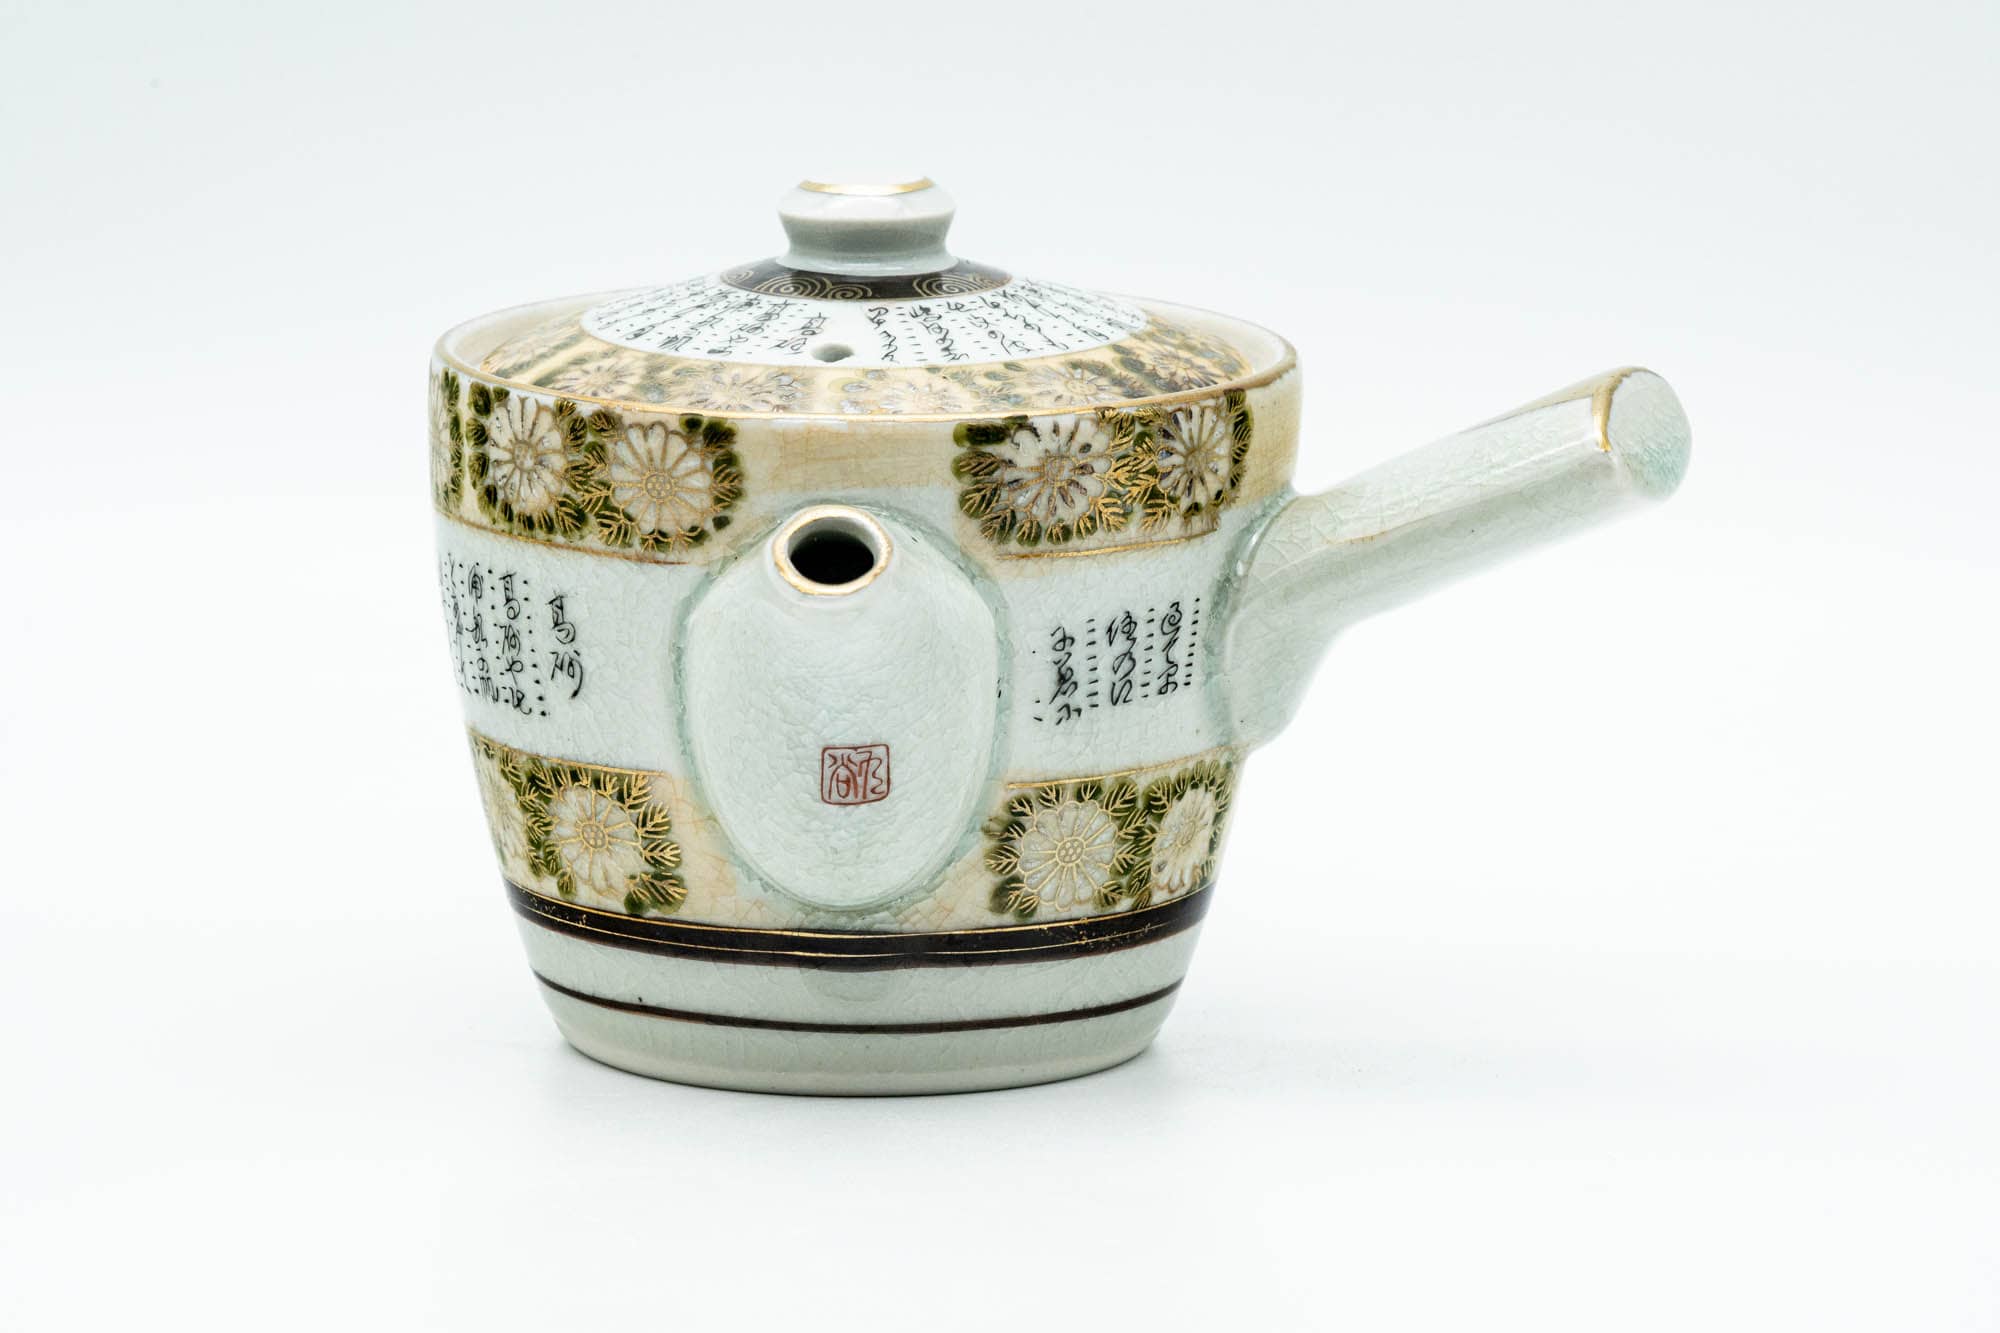 Japanese Tea Set - Gold White Chrysanthemum Kutani-yaki Kyusu Teapot with 2 Yunomi Teacups